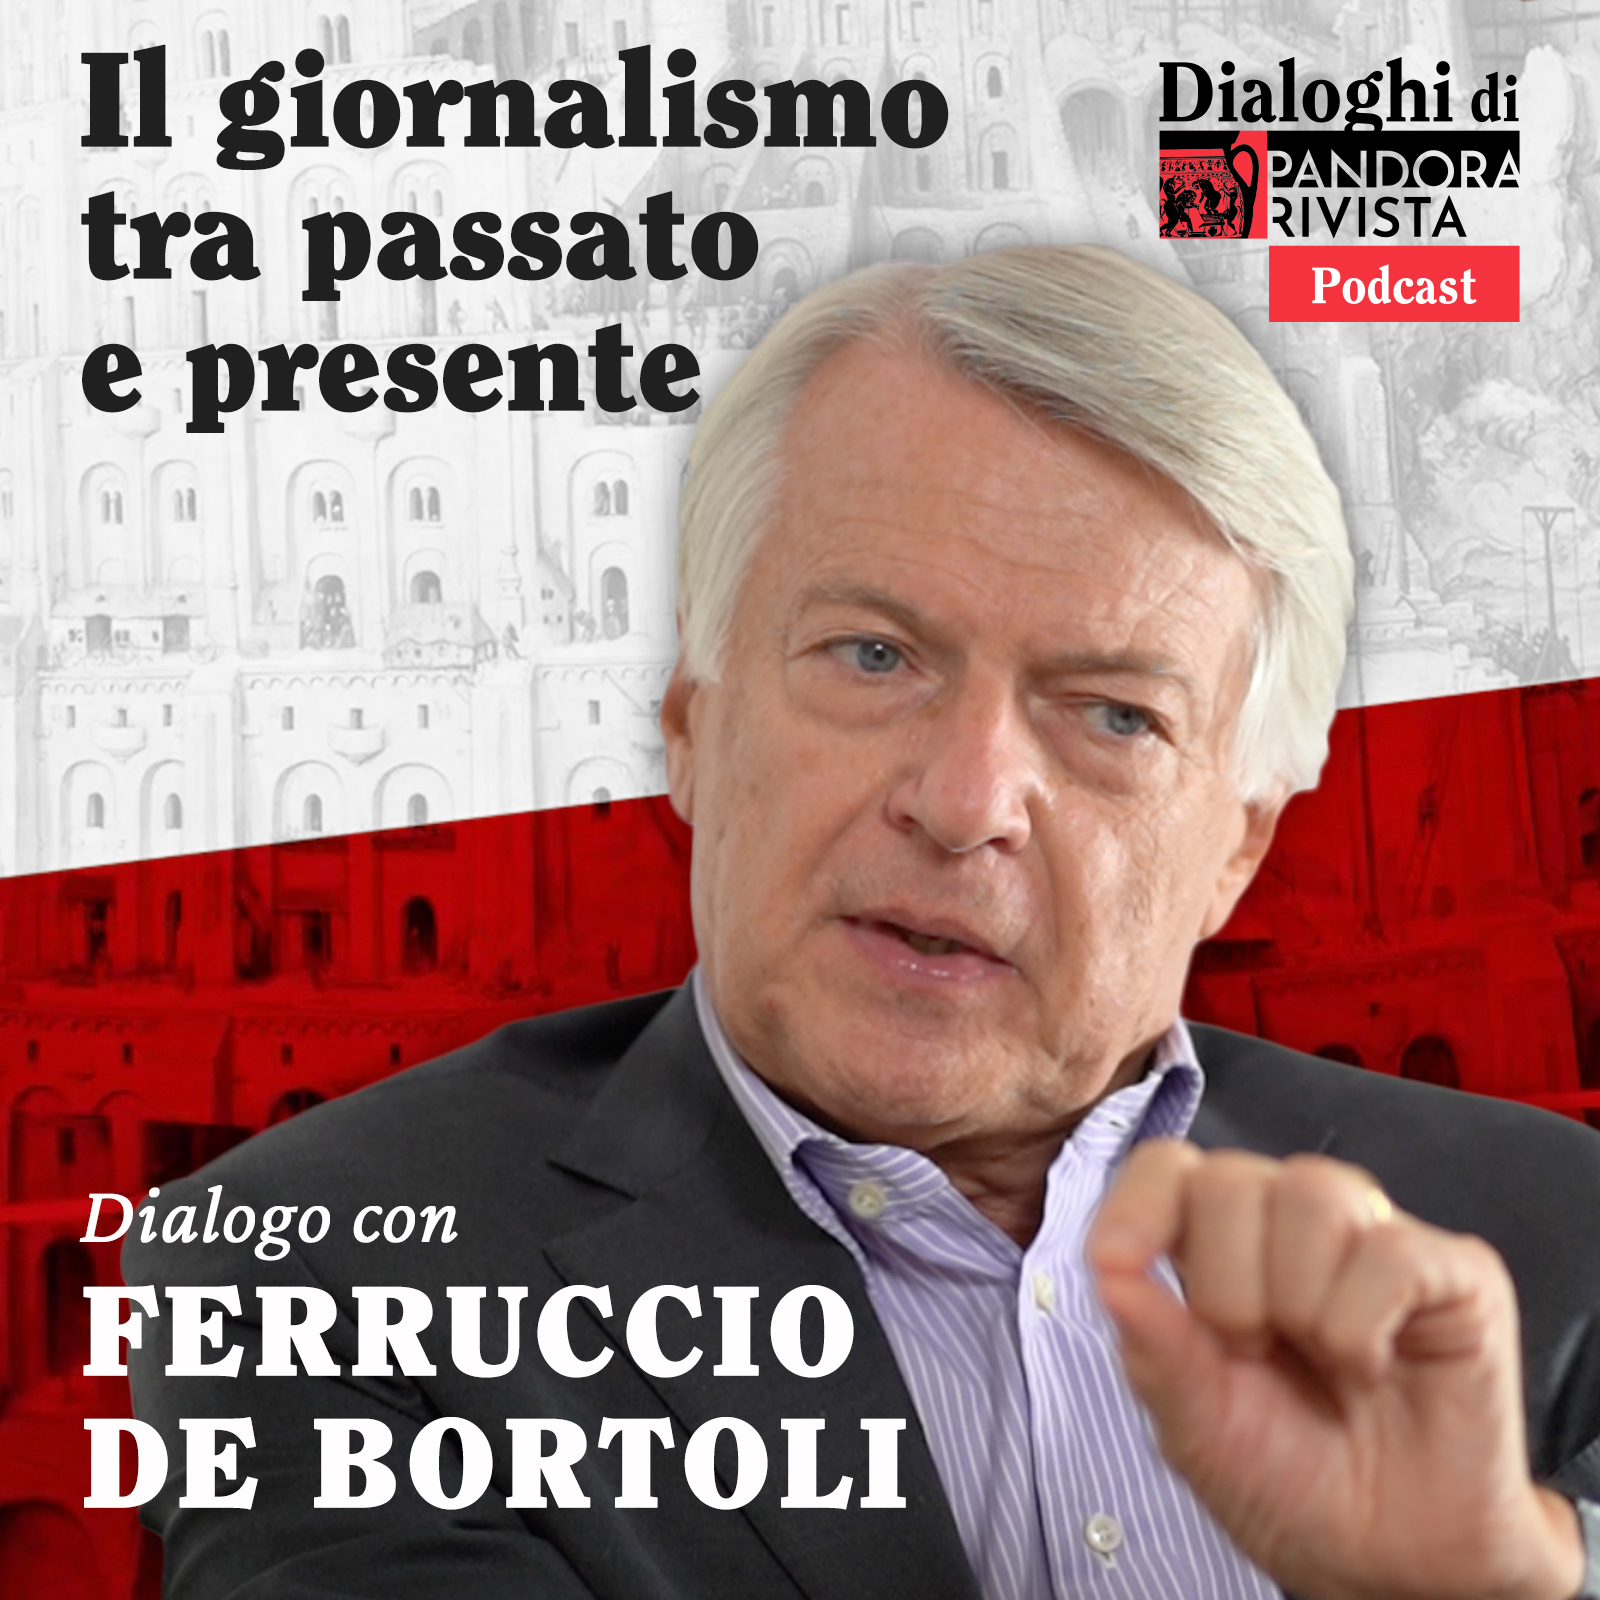 Ferruccio De Bortoli – Il giornalismo tra passato e presente